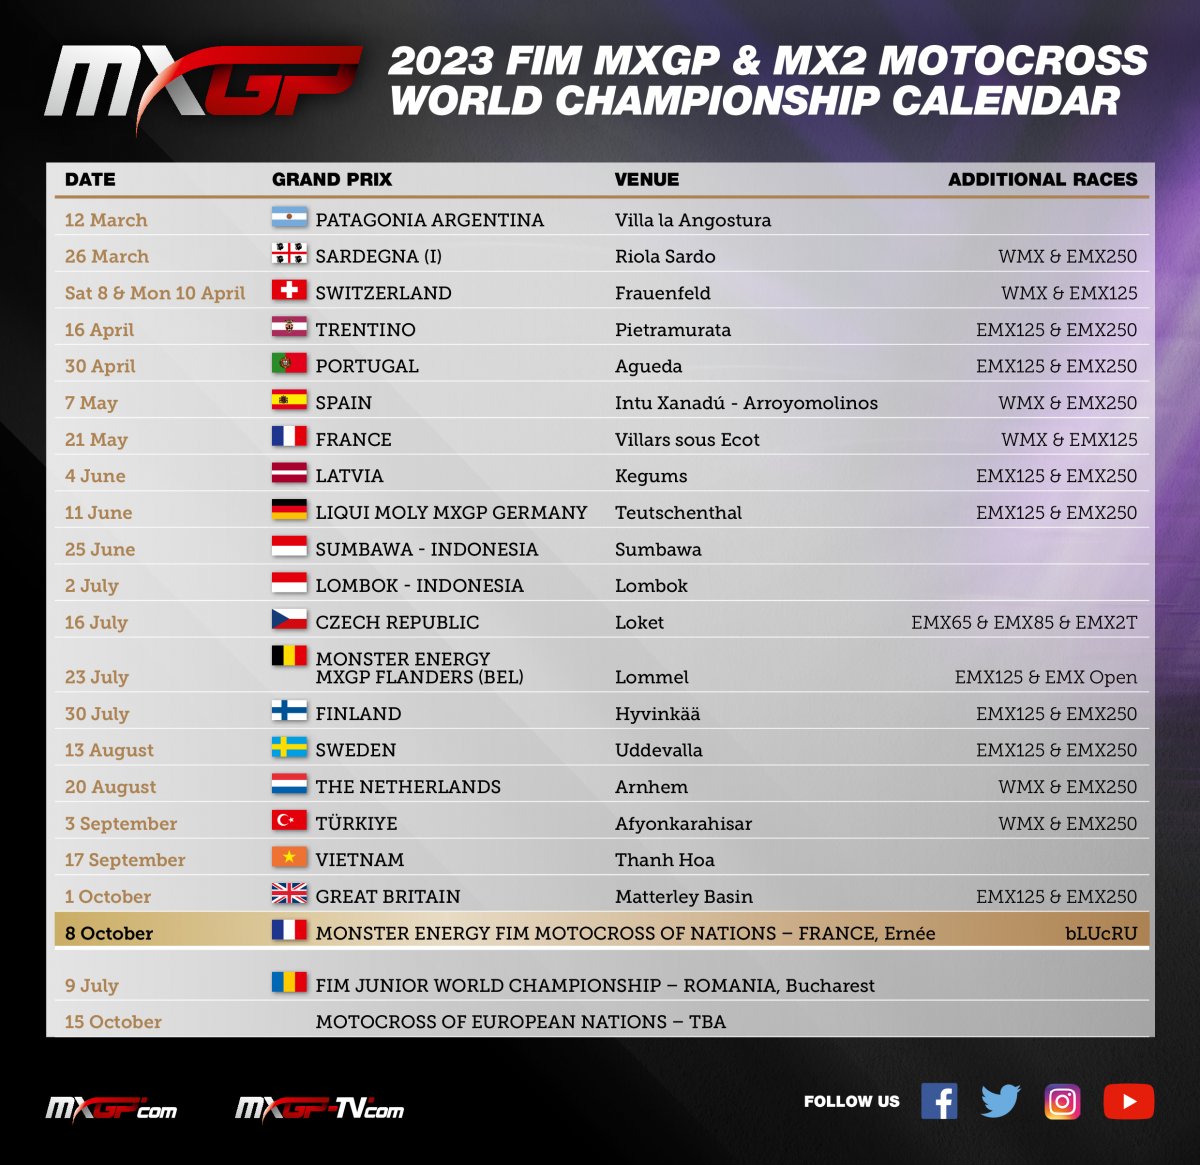 Календарь чемпионата мира по мотокроссу MXGP 2023 (финальная версия, 2.02.2023)